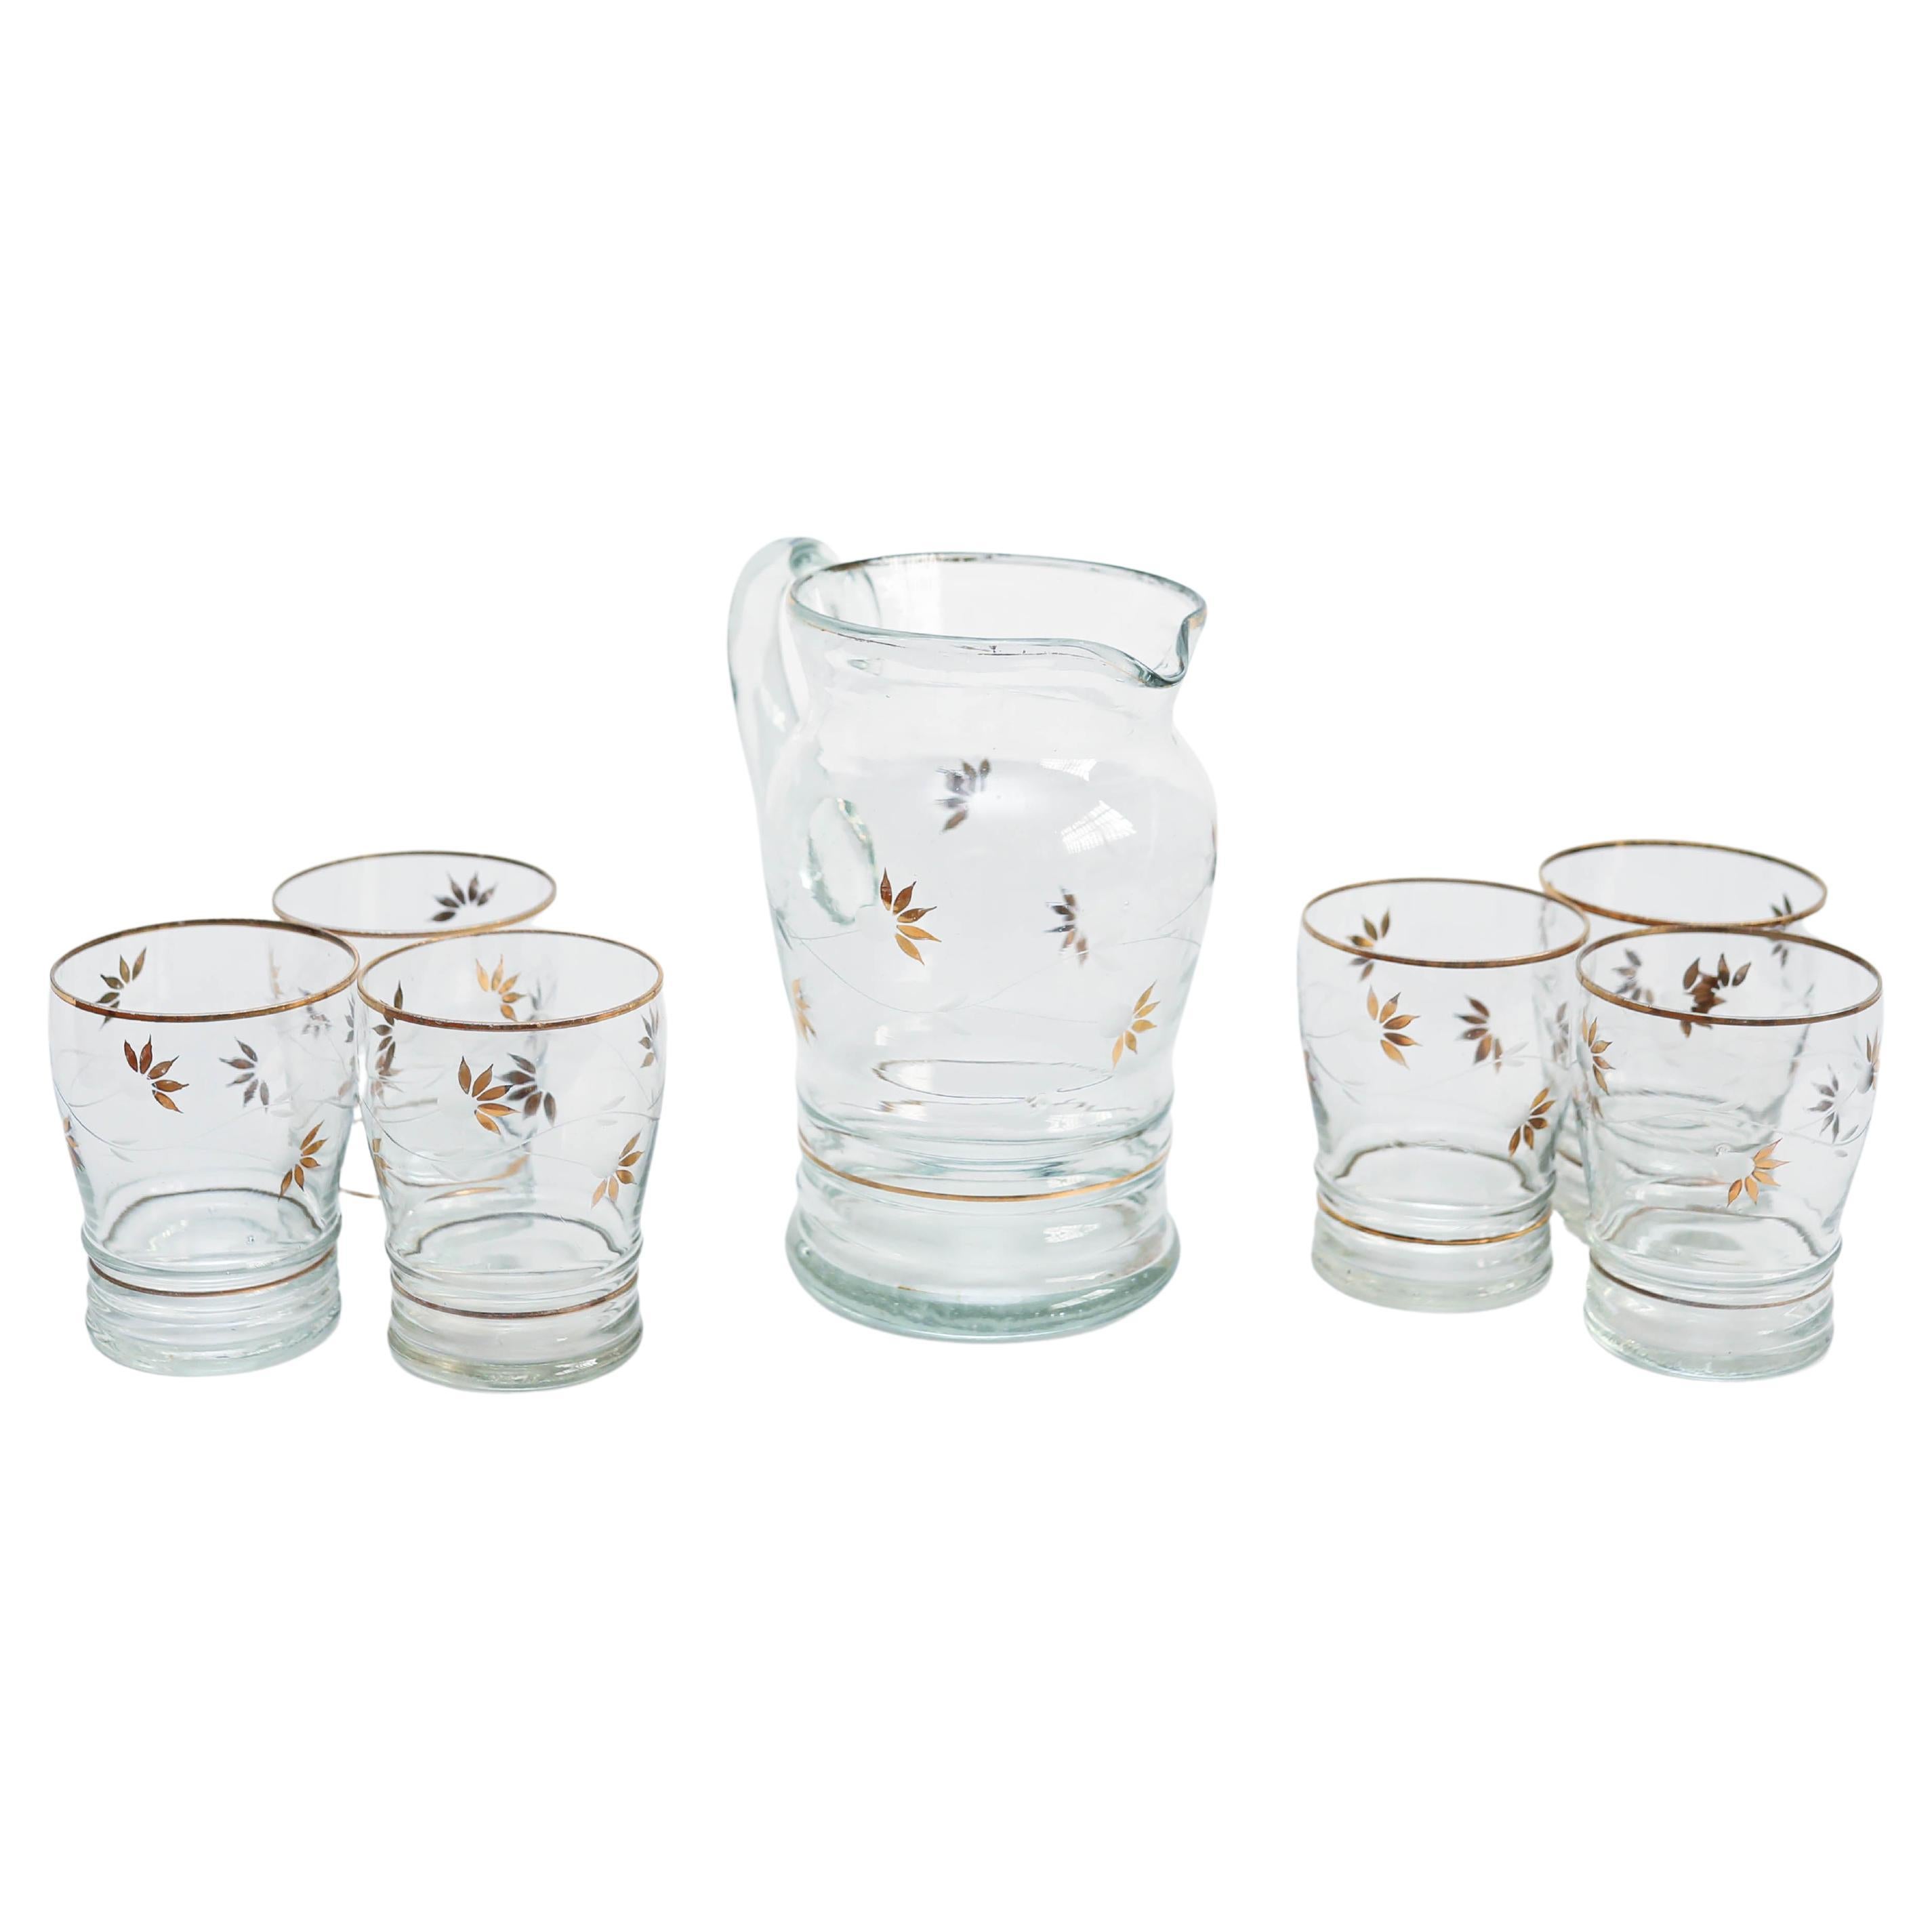  Ensemble de sept vases et verres en verre anciens, datant d'environ 1970